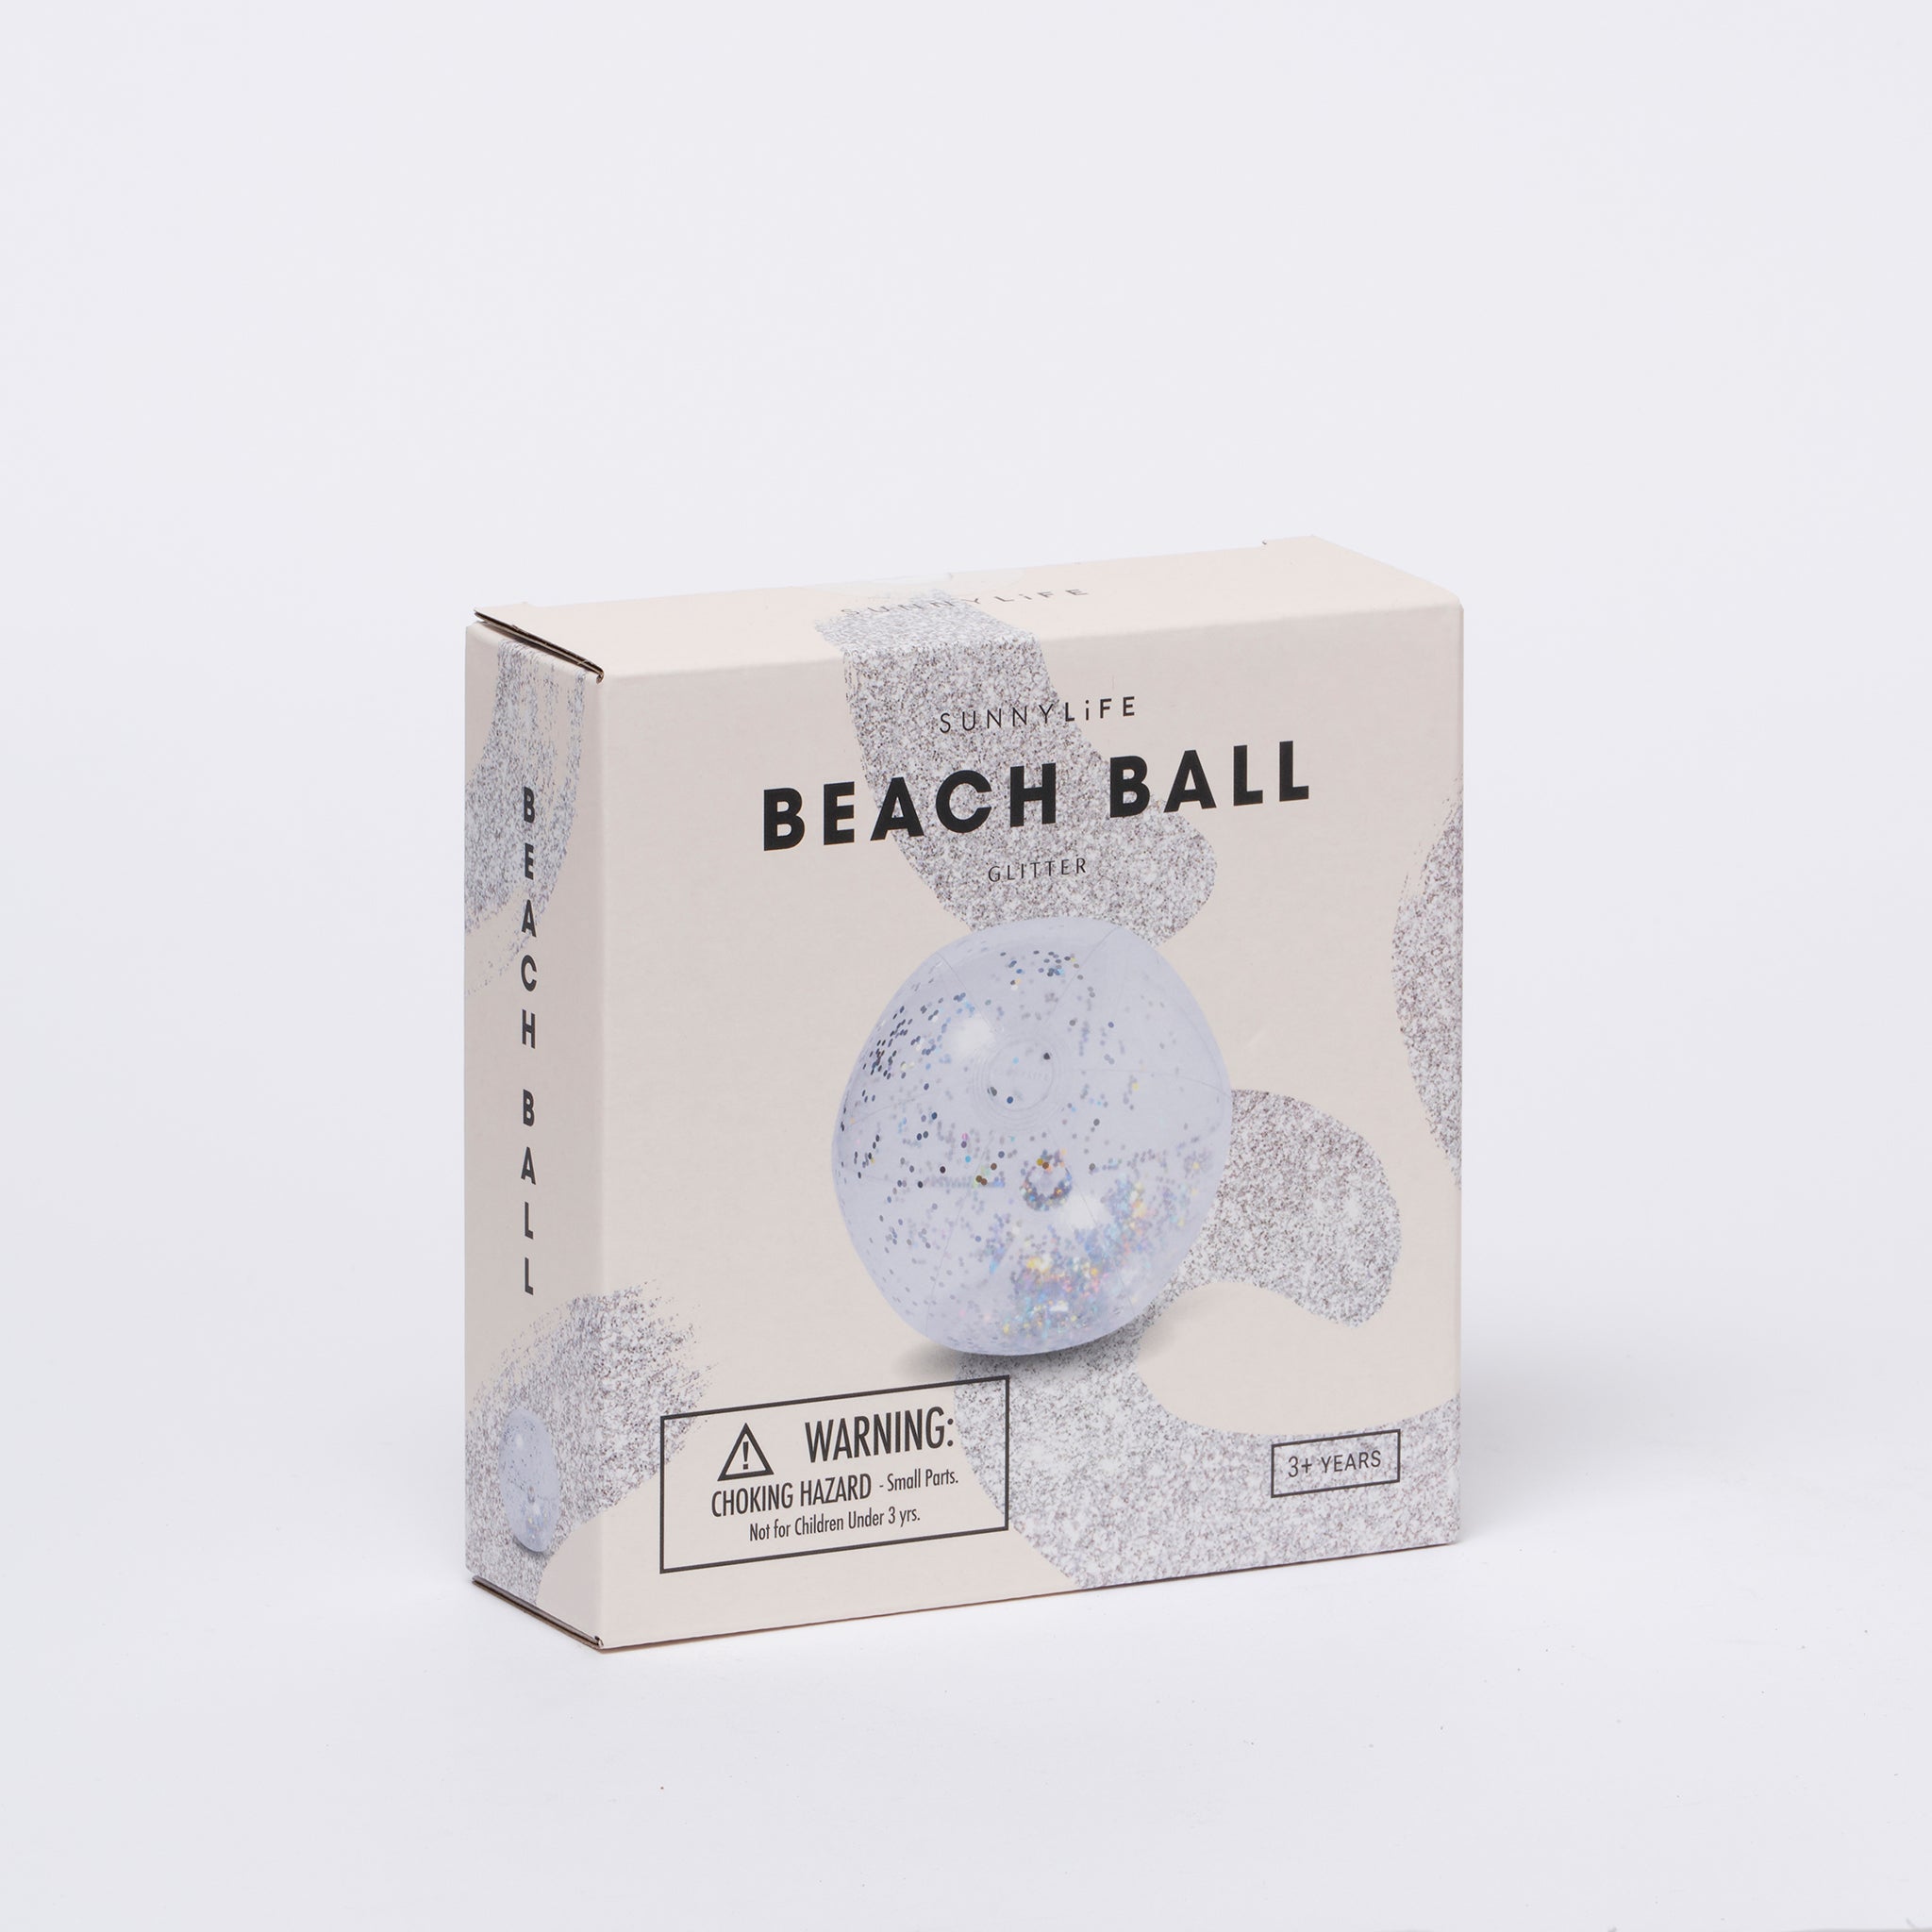 Le ballon de plage gonflable sorbet